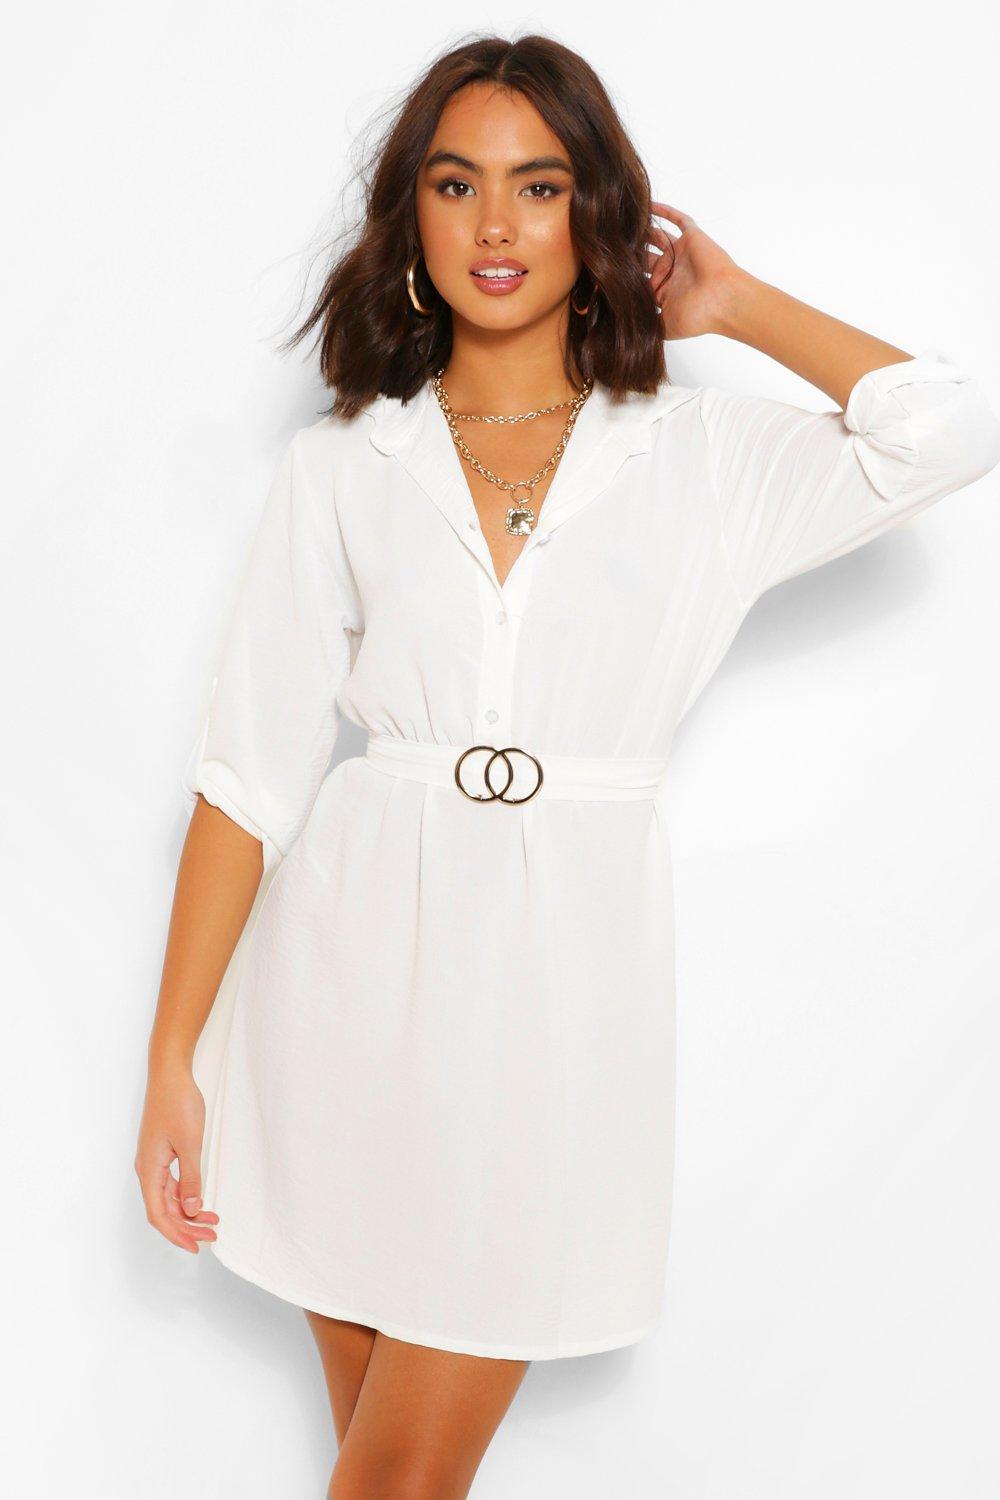 white shirt dresses for women